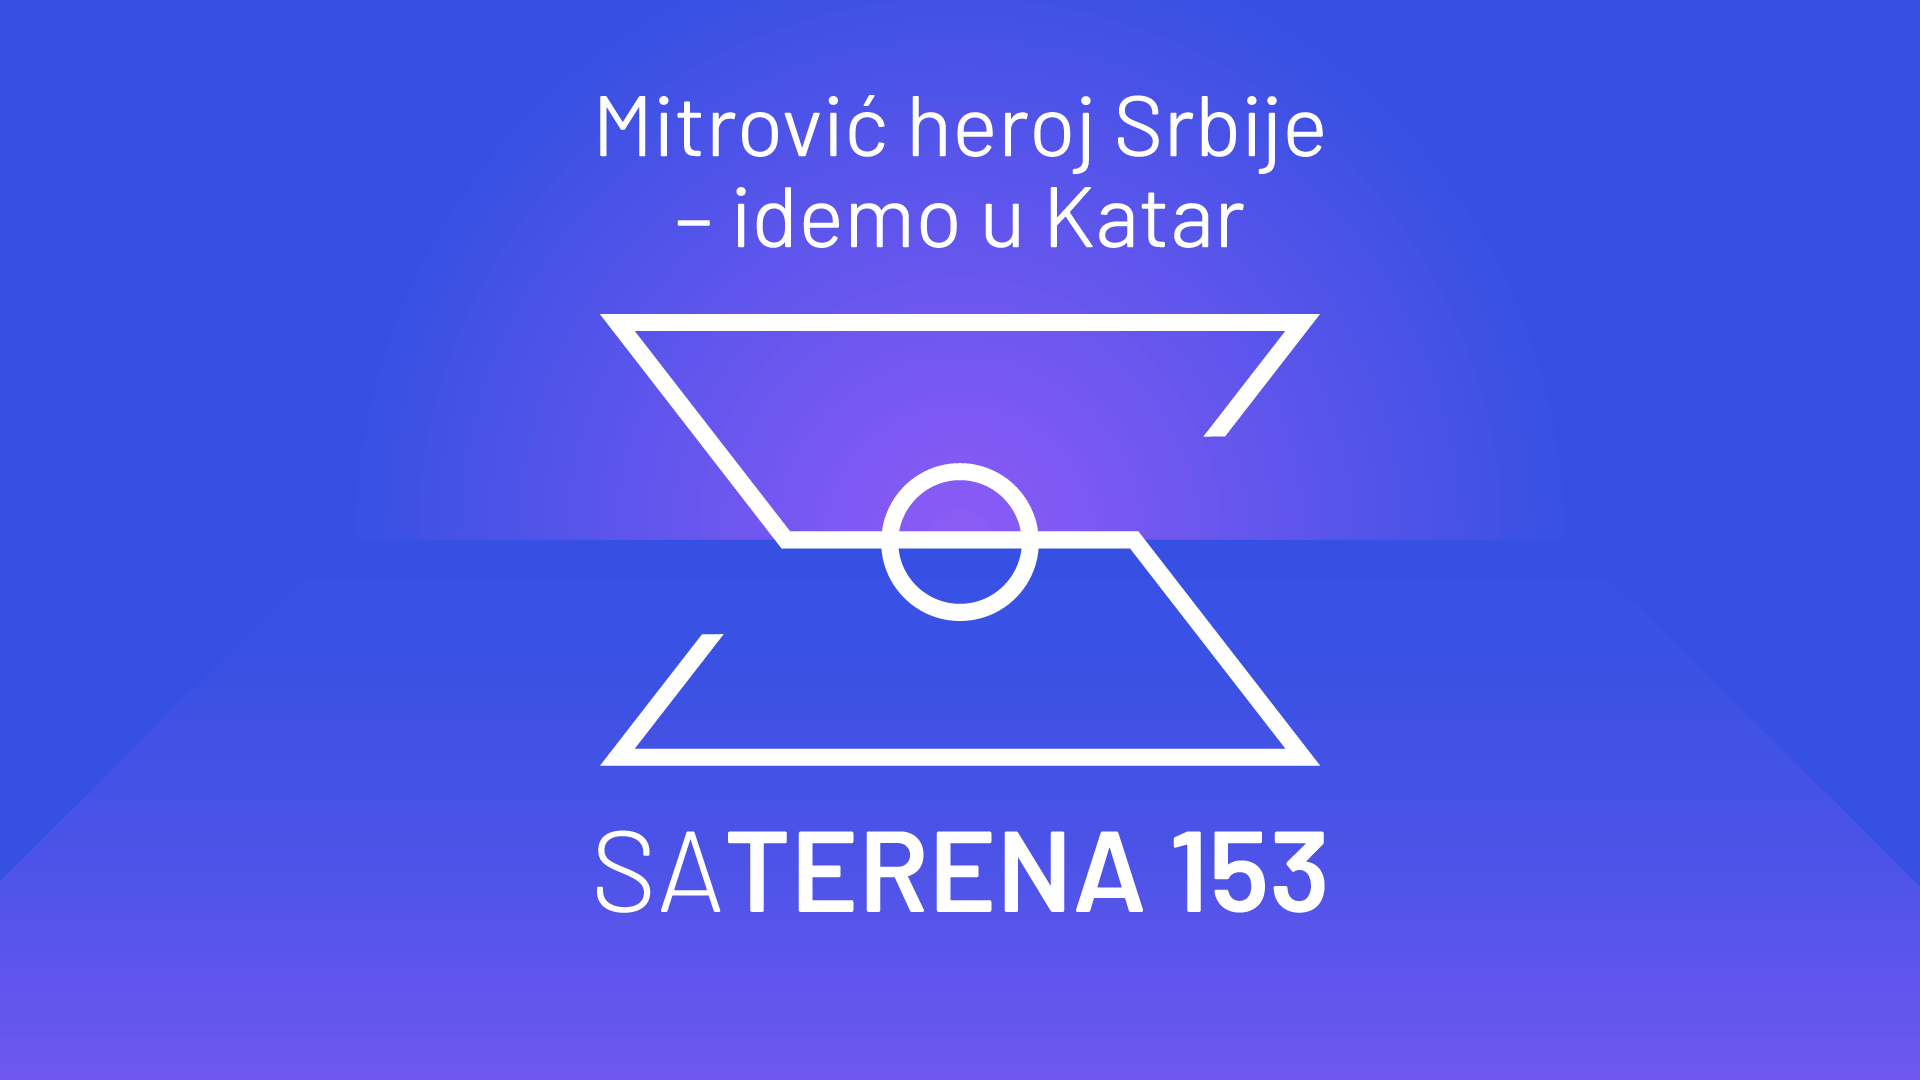 Sa terena 153: Mitrović heroj Srbije – idemo u Katar